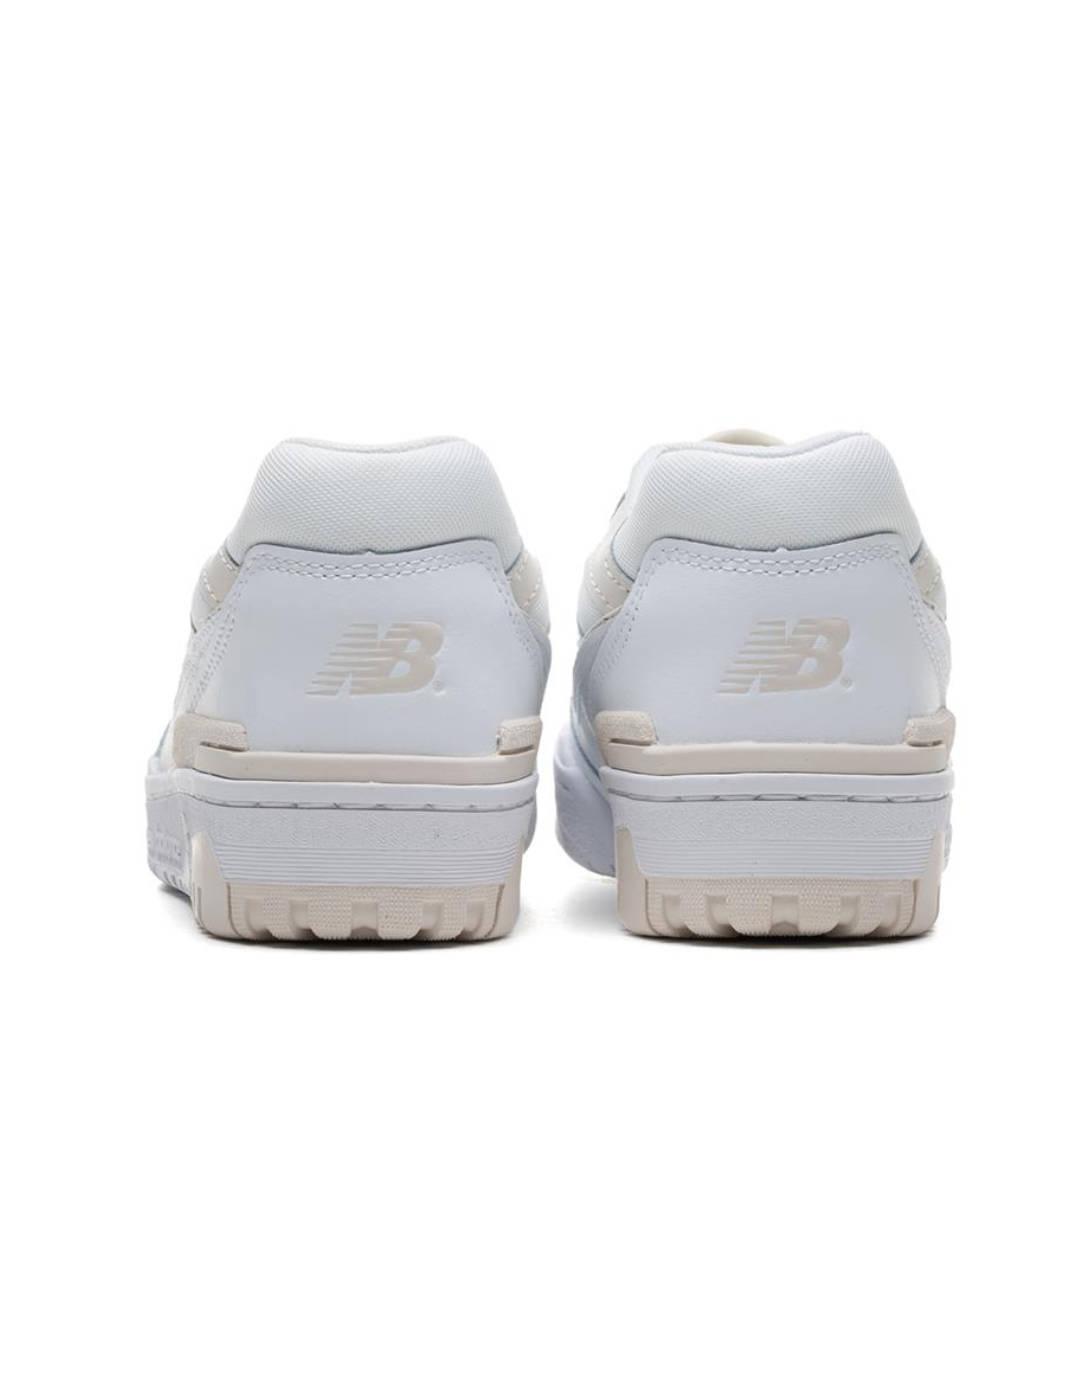 Zapatillas New Balance w550 blanca y beige para mujer